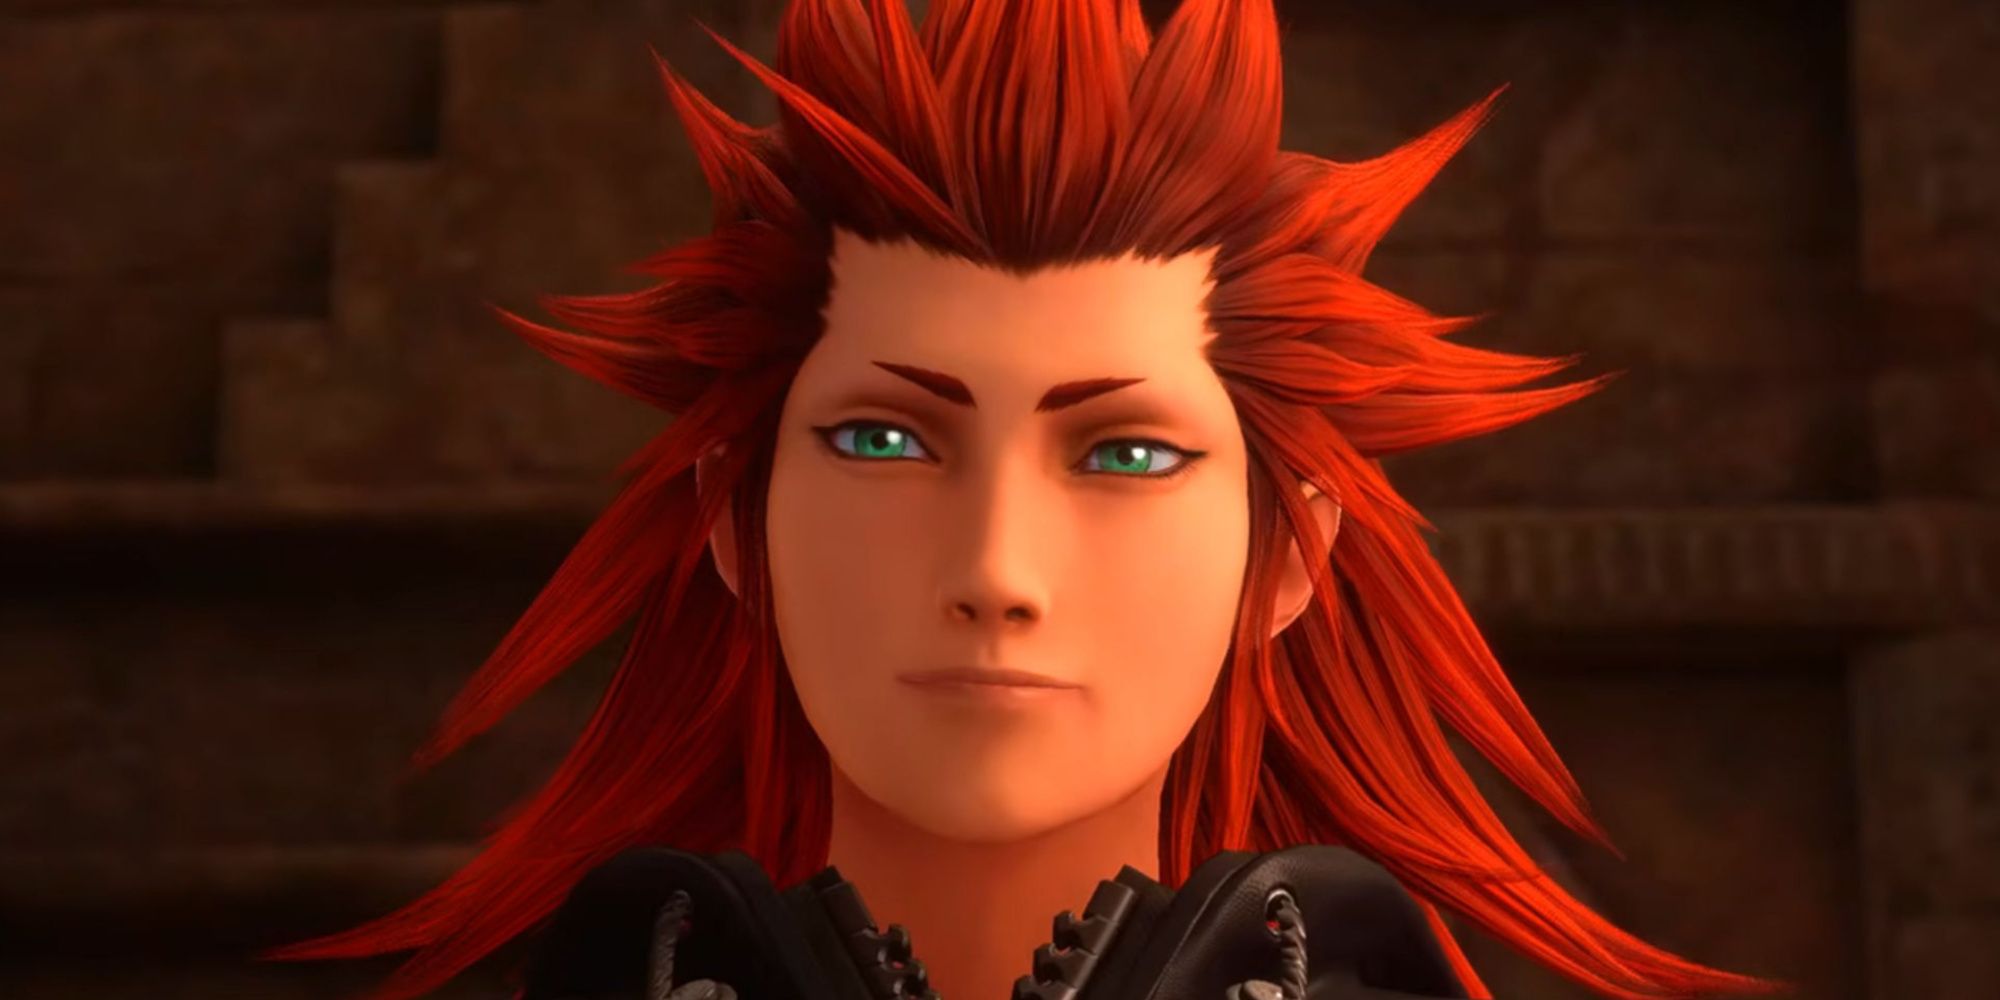 Axel from Kingdom Hearts 3